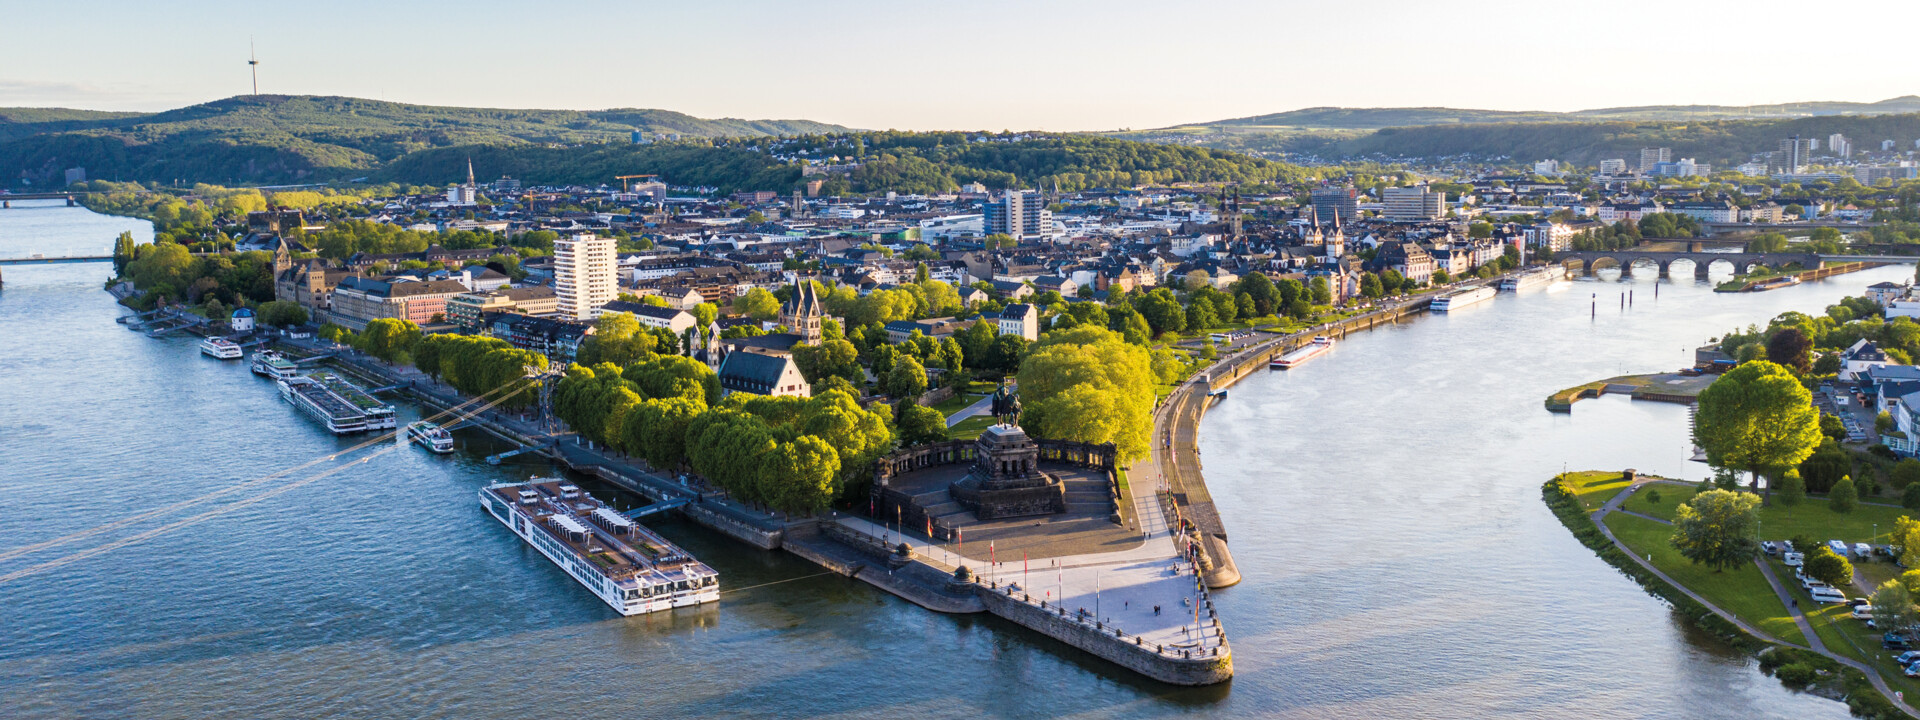 Luftaufnahme vom Deutschen Eck in Koblenz mit der Seilbahn, dem Rhein, der Mosel und Schiffen im Vordergrund ©Koblenz-Touristik GmbH, Dominik Ketz